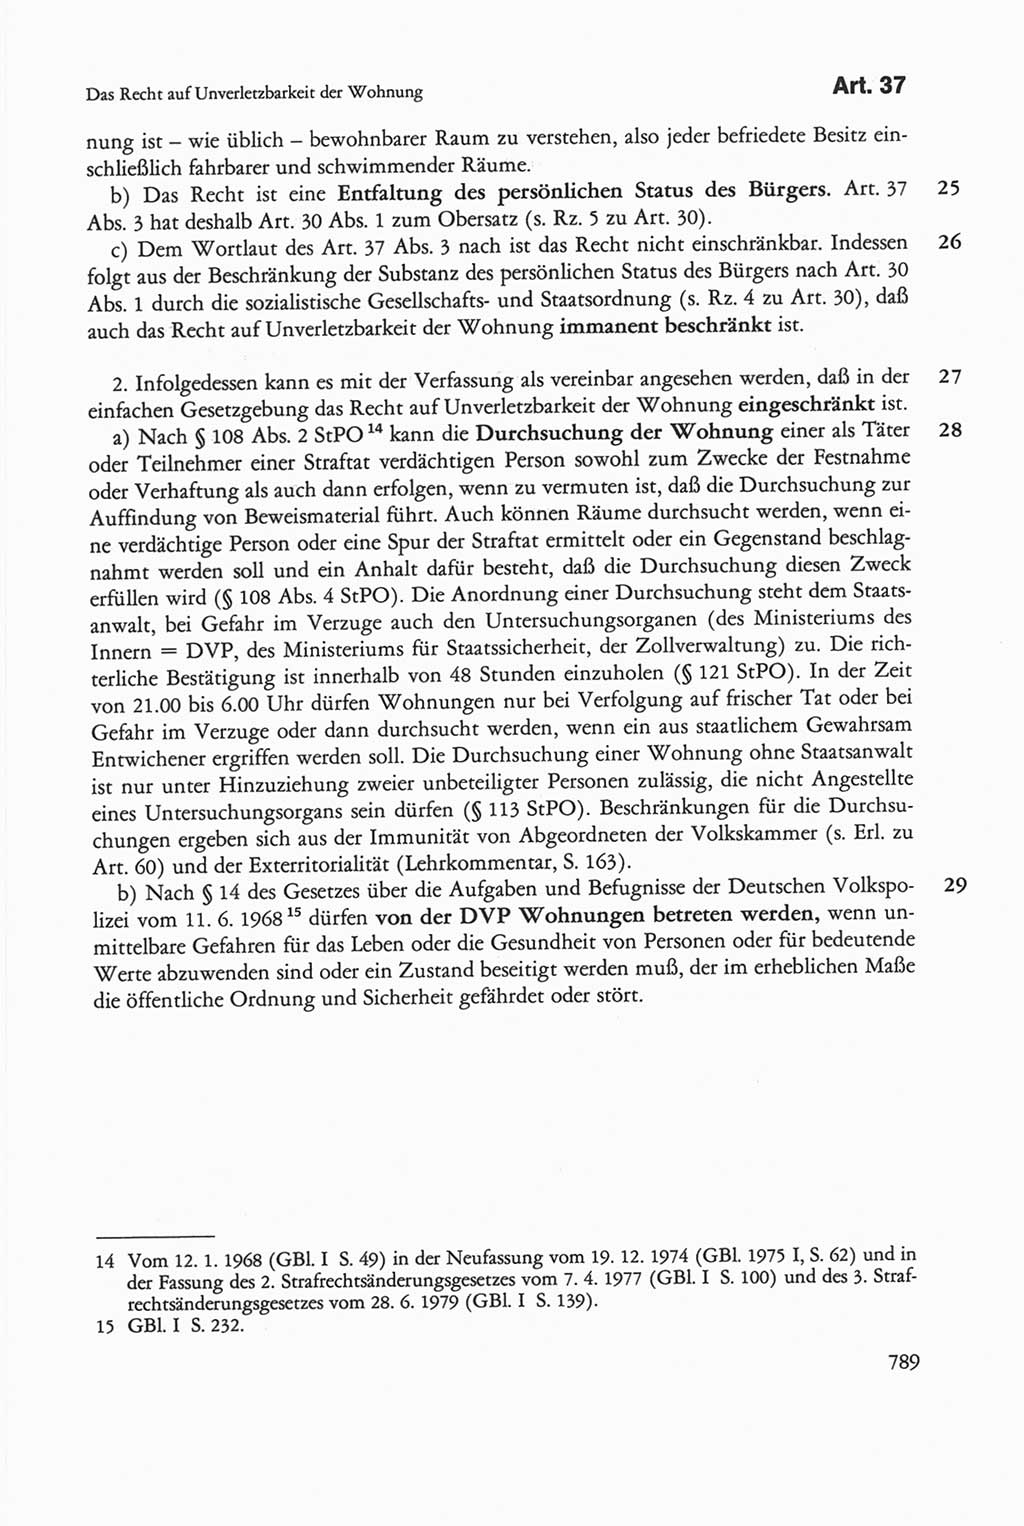 Die sozialistische Verfassung der Deutschen Demokratischen Republik (DDR), Kommentar 1982, Seite 789 (Soz. Verf. DDR Komm. 1982, S. 789)